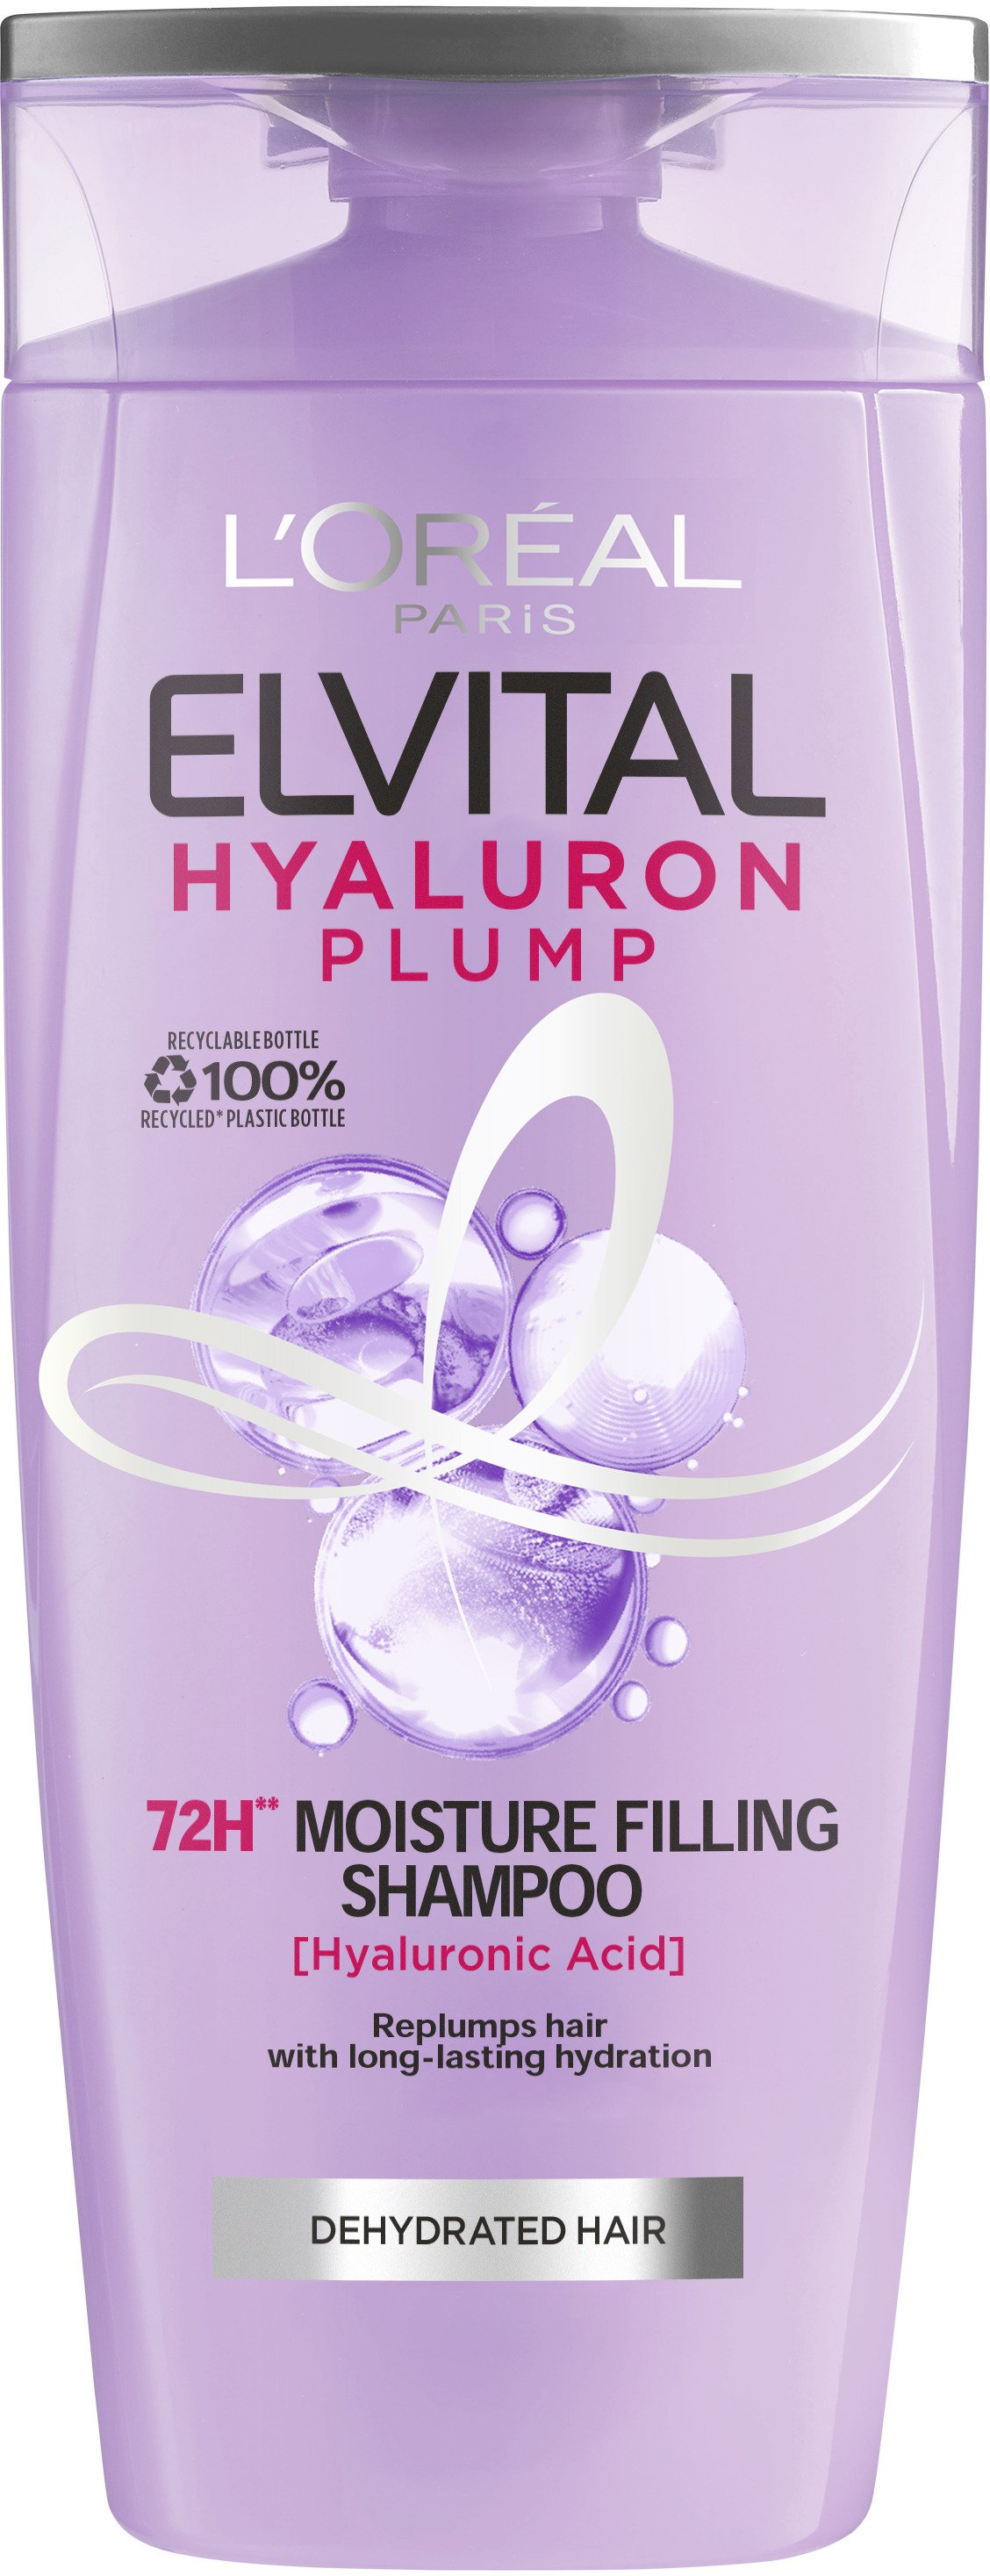 L'Oréal Paris Elvital Hyaluron Plump 72H Moisture Filling Shampoo 250 ml